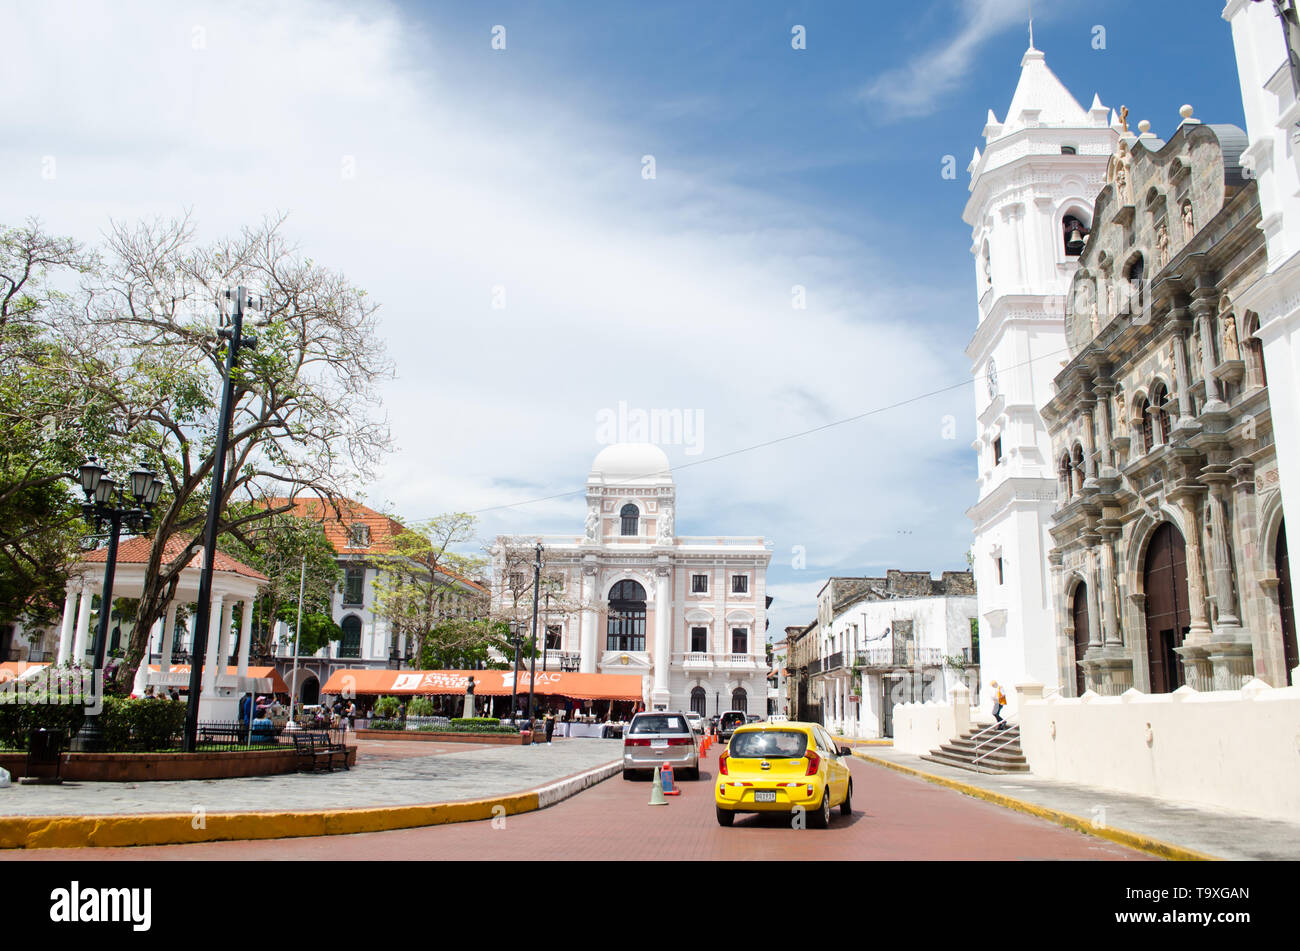 Some of the most important buildings surrounding the Plaza de la Independencia in Casco Viejo.   The Catedral Basilica Santa Maria La Antigua. Stock Photo